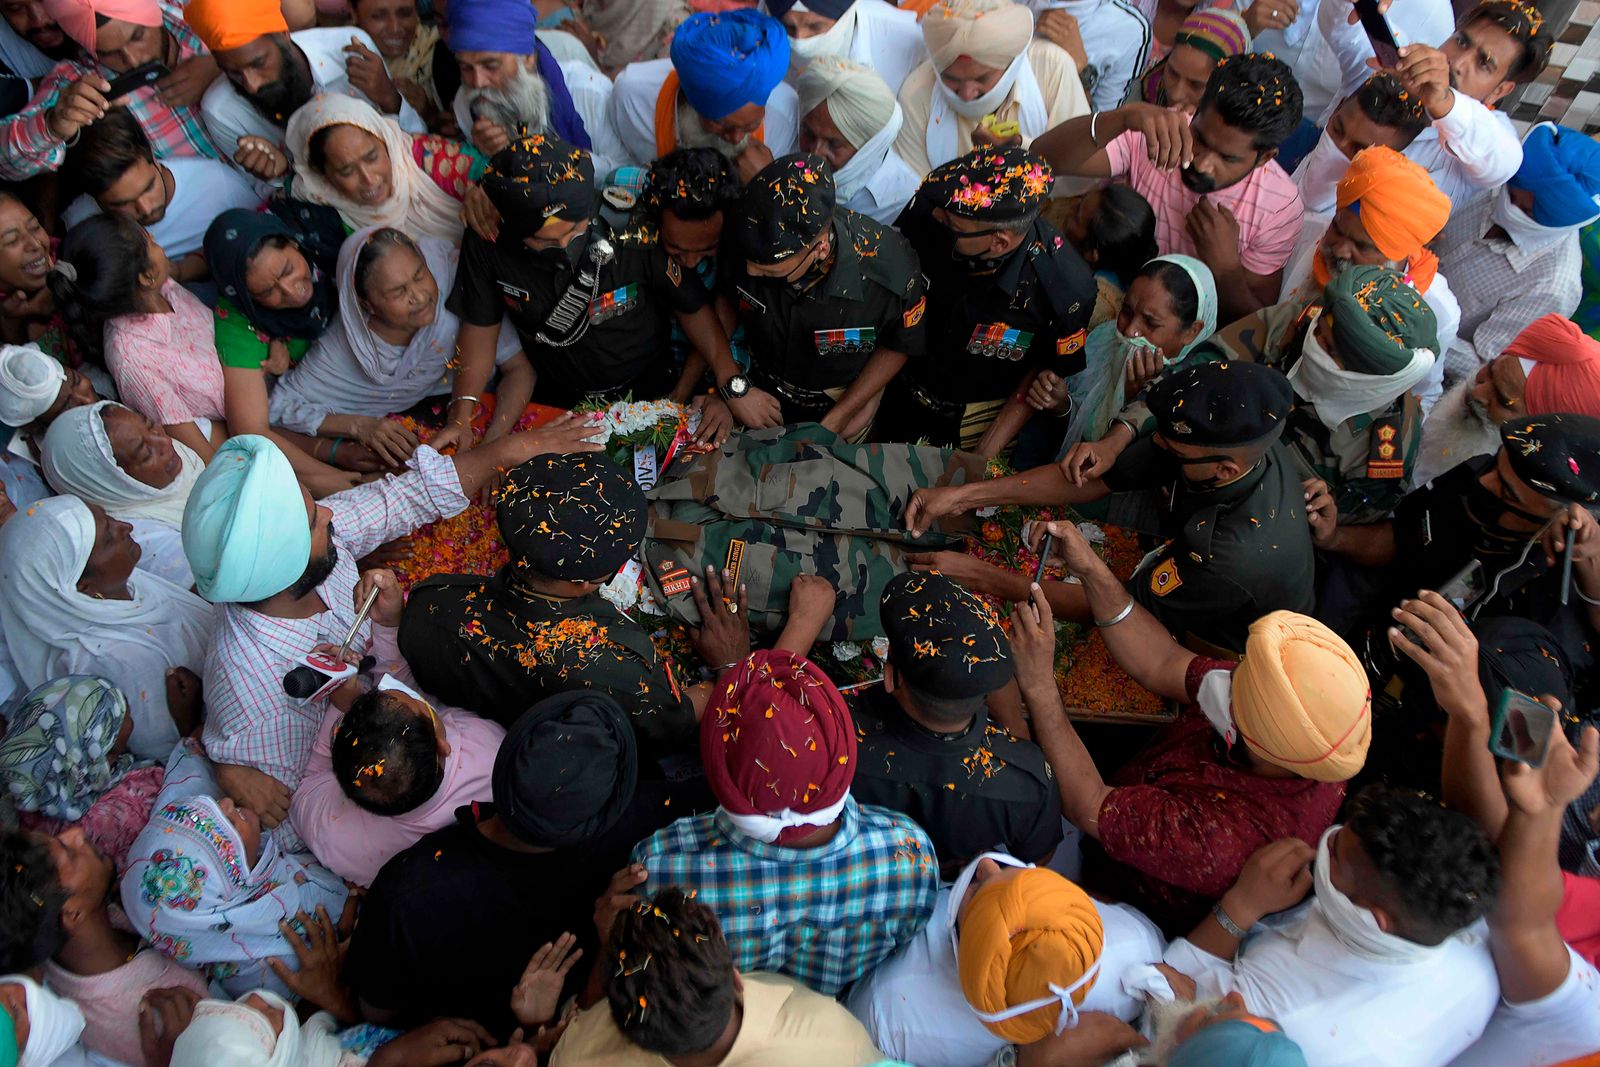 أفراد من الجيش الهندي يضعون الزي العسكري لزميلهم راجويندر سينغ ، الذي فقد حياته في انتهاك وقف إطلاق النار من قبل الجيش الباكستاني على خط السيطرة في قطاع ناوشيرا بجامو وكشمير ، خلال مراسم حرق الجثة في قرية جويندوال صاحب ، على بعد حوالي 50 كيلومترا من أمريتسار ، 31 أغسطس 2020 (تصوير ناريندر نانو / وكالة الصحافة الفرنسية) - AFP